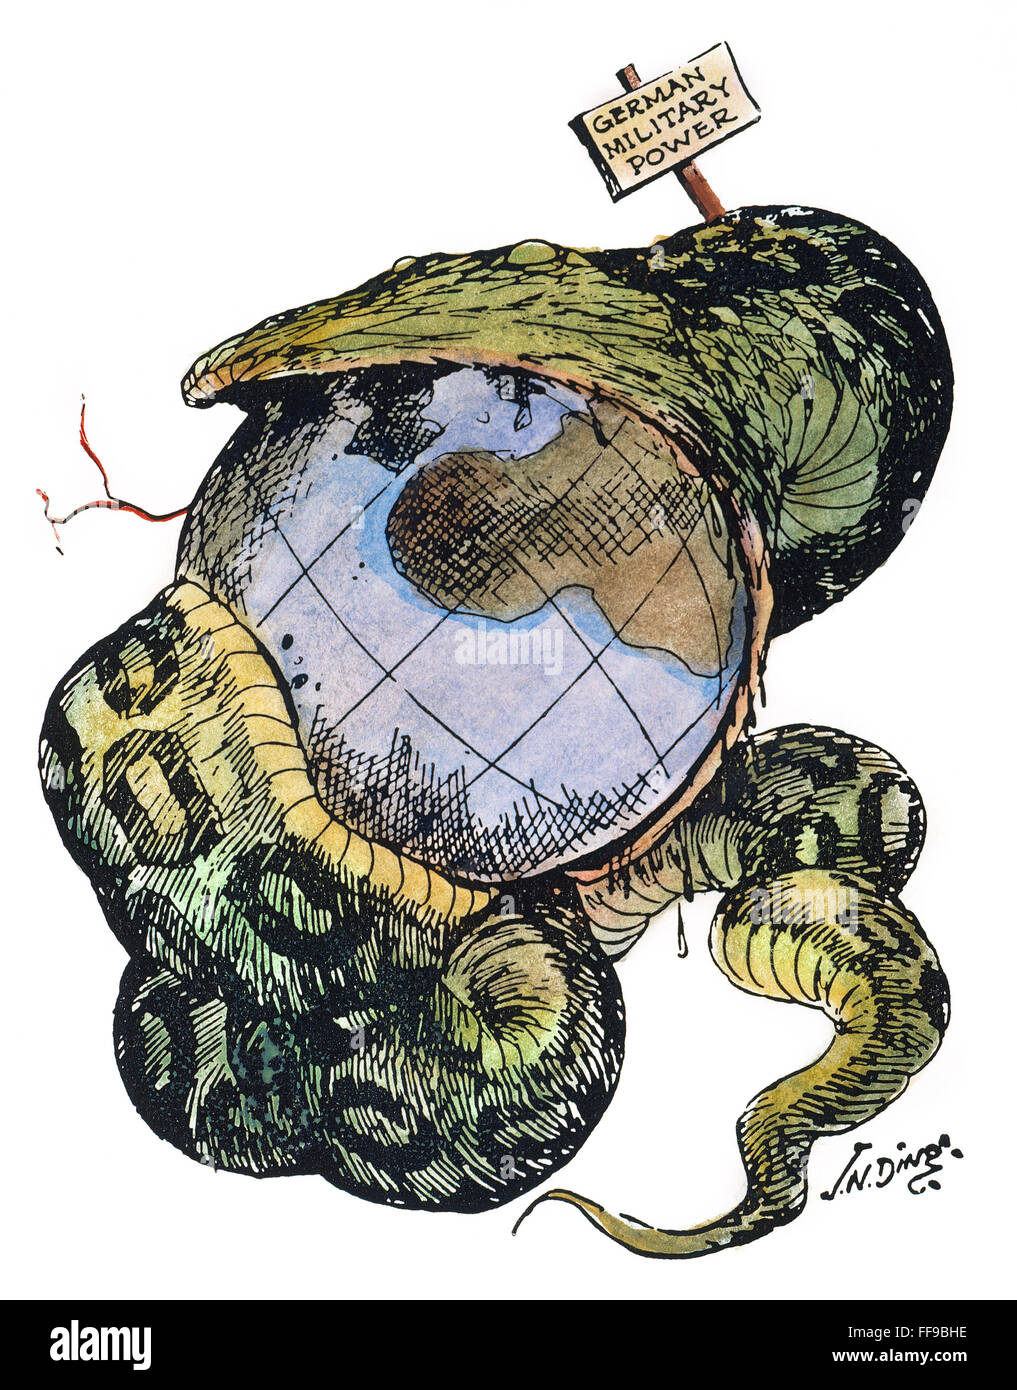 Caricatura: agresión, 1917. /Nel Python: una fuerte militarmente Alemania absorbe el mundo en esta caricatura de anti-alemana J.N. ('Ding') Darling, c1917. Foto de stock